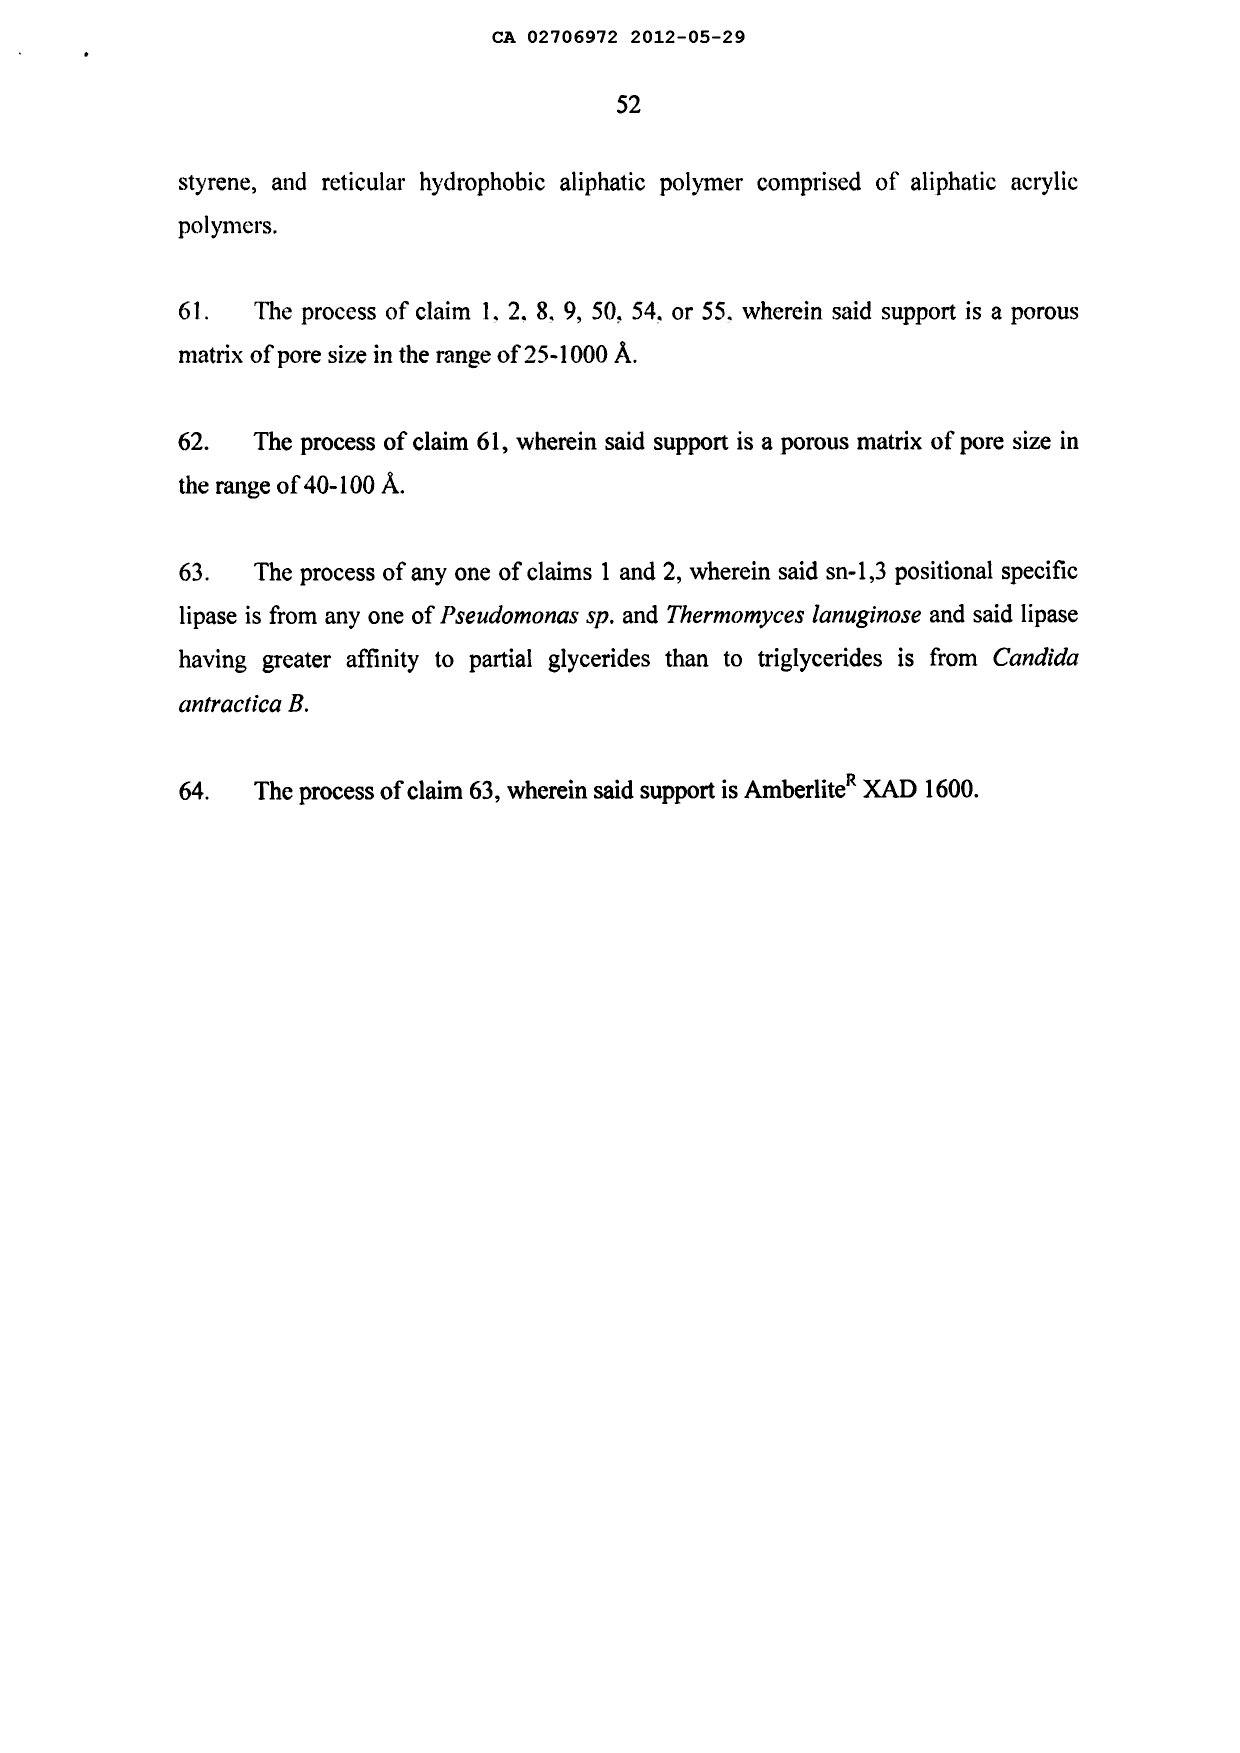 Document de brevet canadien 2706972. Poursuite-Amendment 20120529. Image 14 de 14